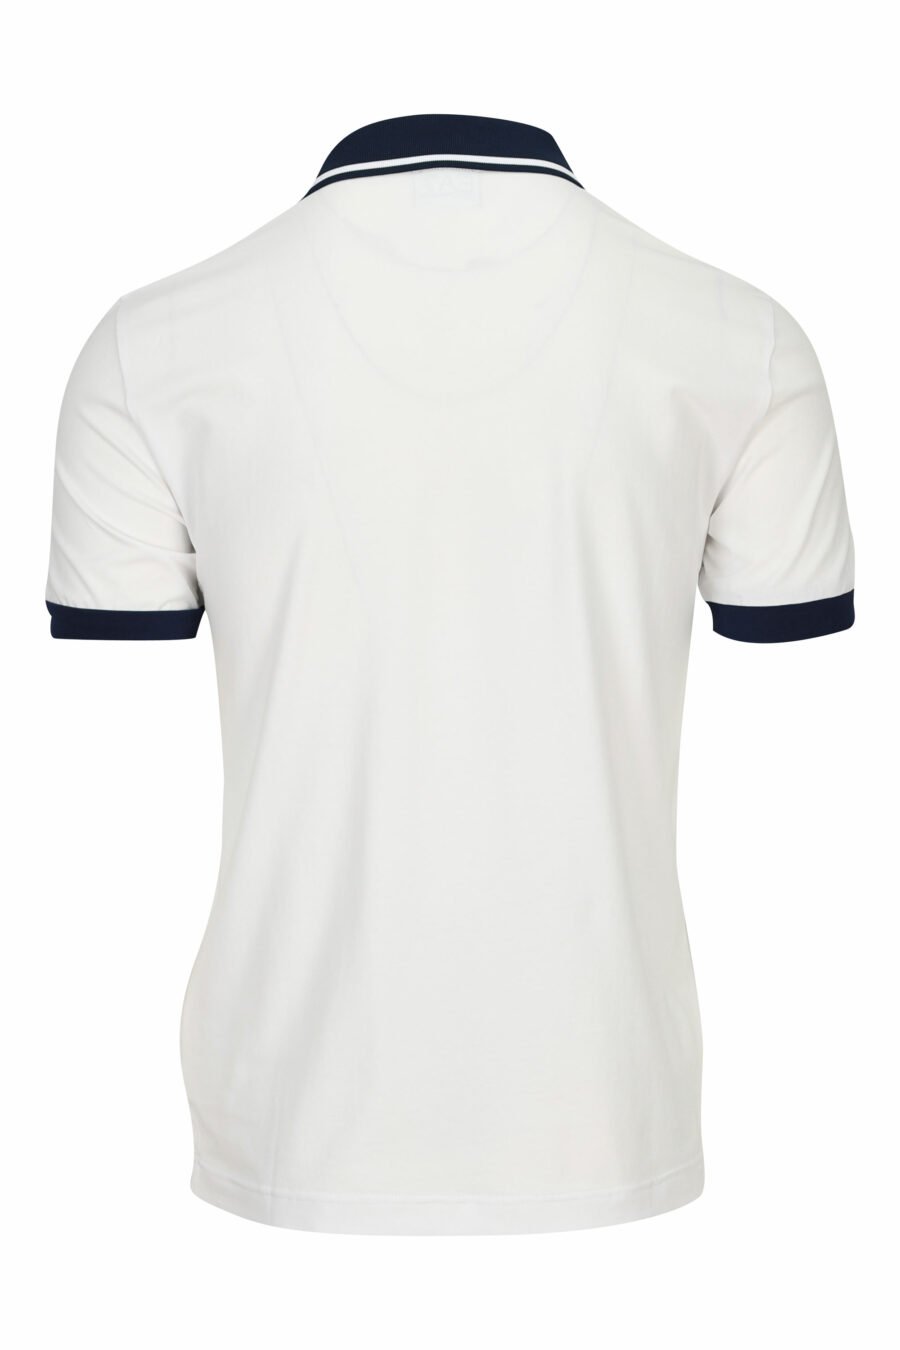 Polo blanc avec mini logo "lux identity" sur la bande d'épaule - 8058947458868